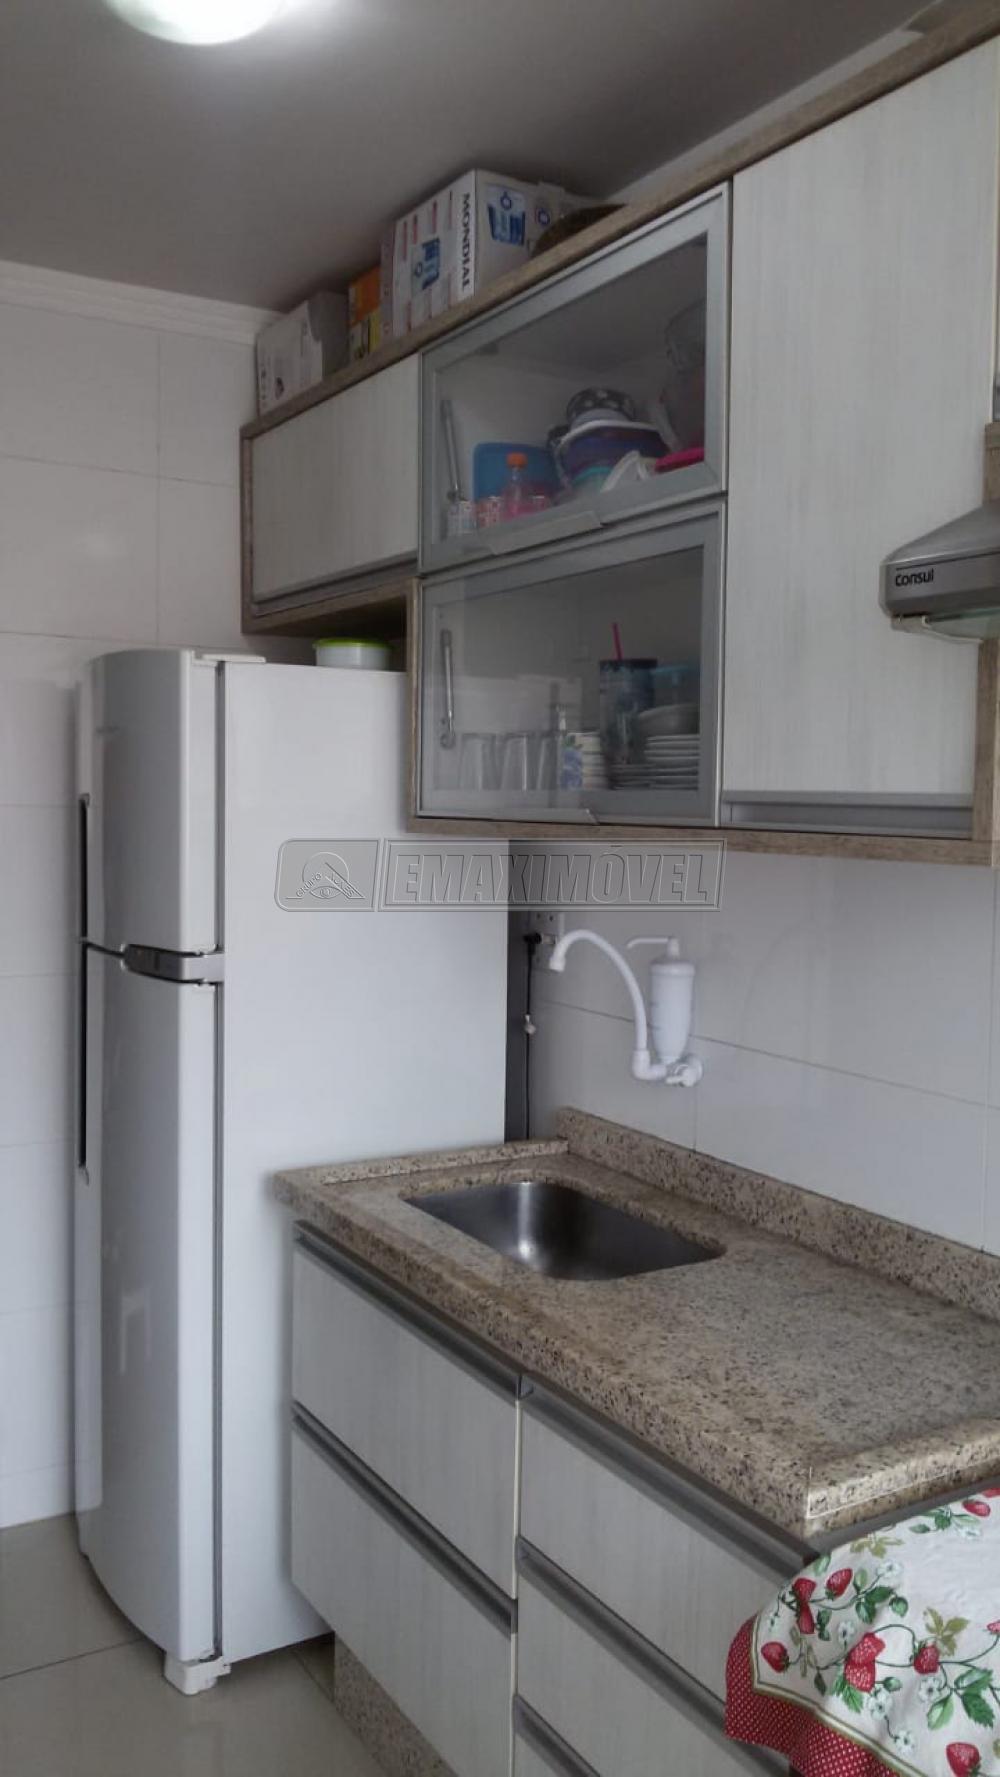 Comprar Apartamento / Padrão em Sorocaba R$ 160.000,00 - Foto 13